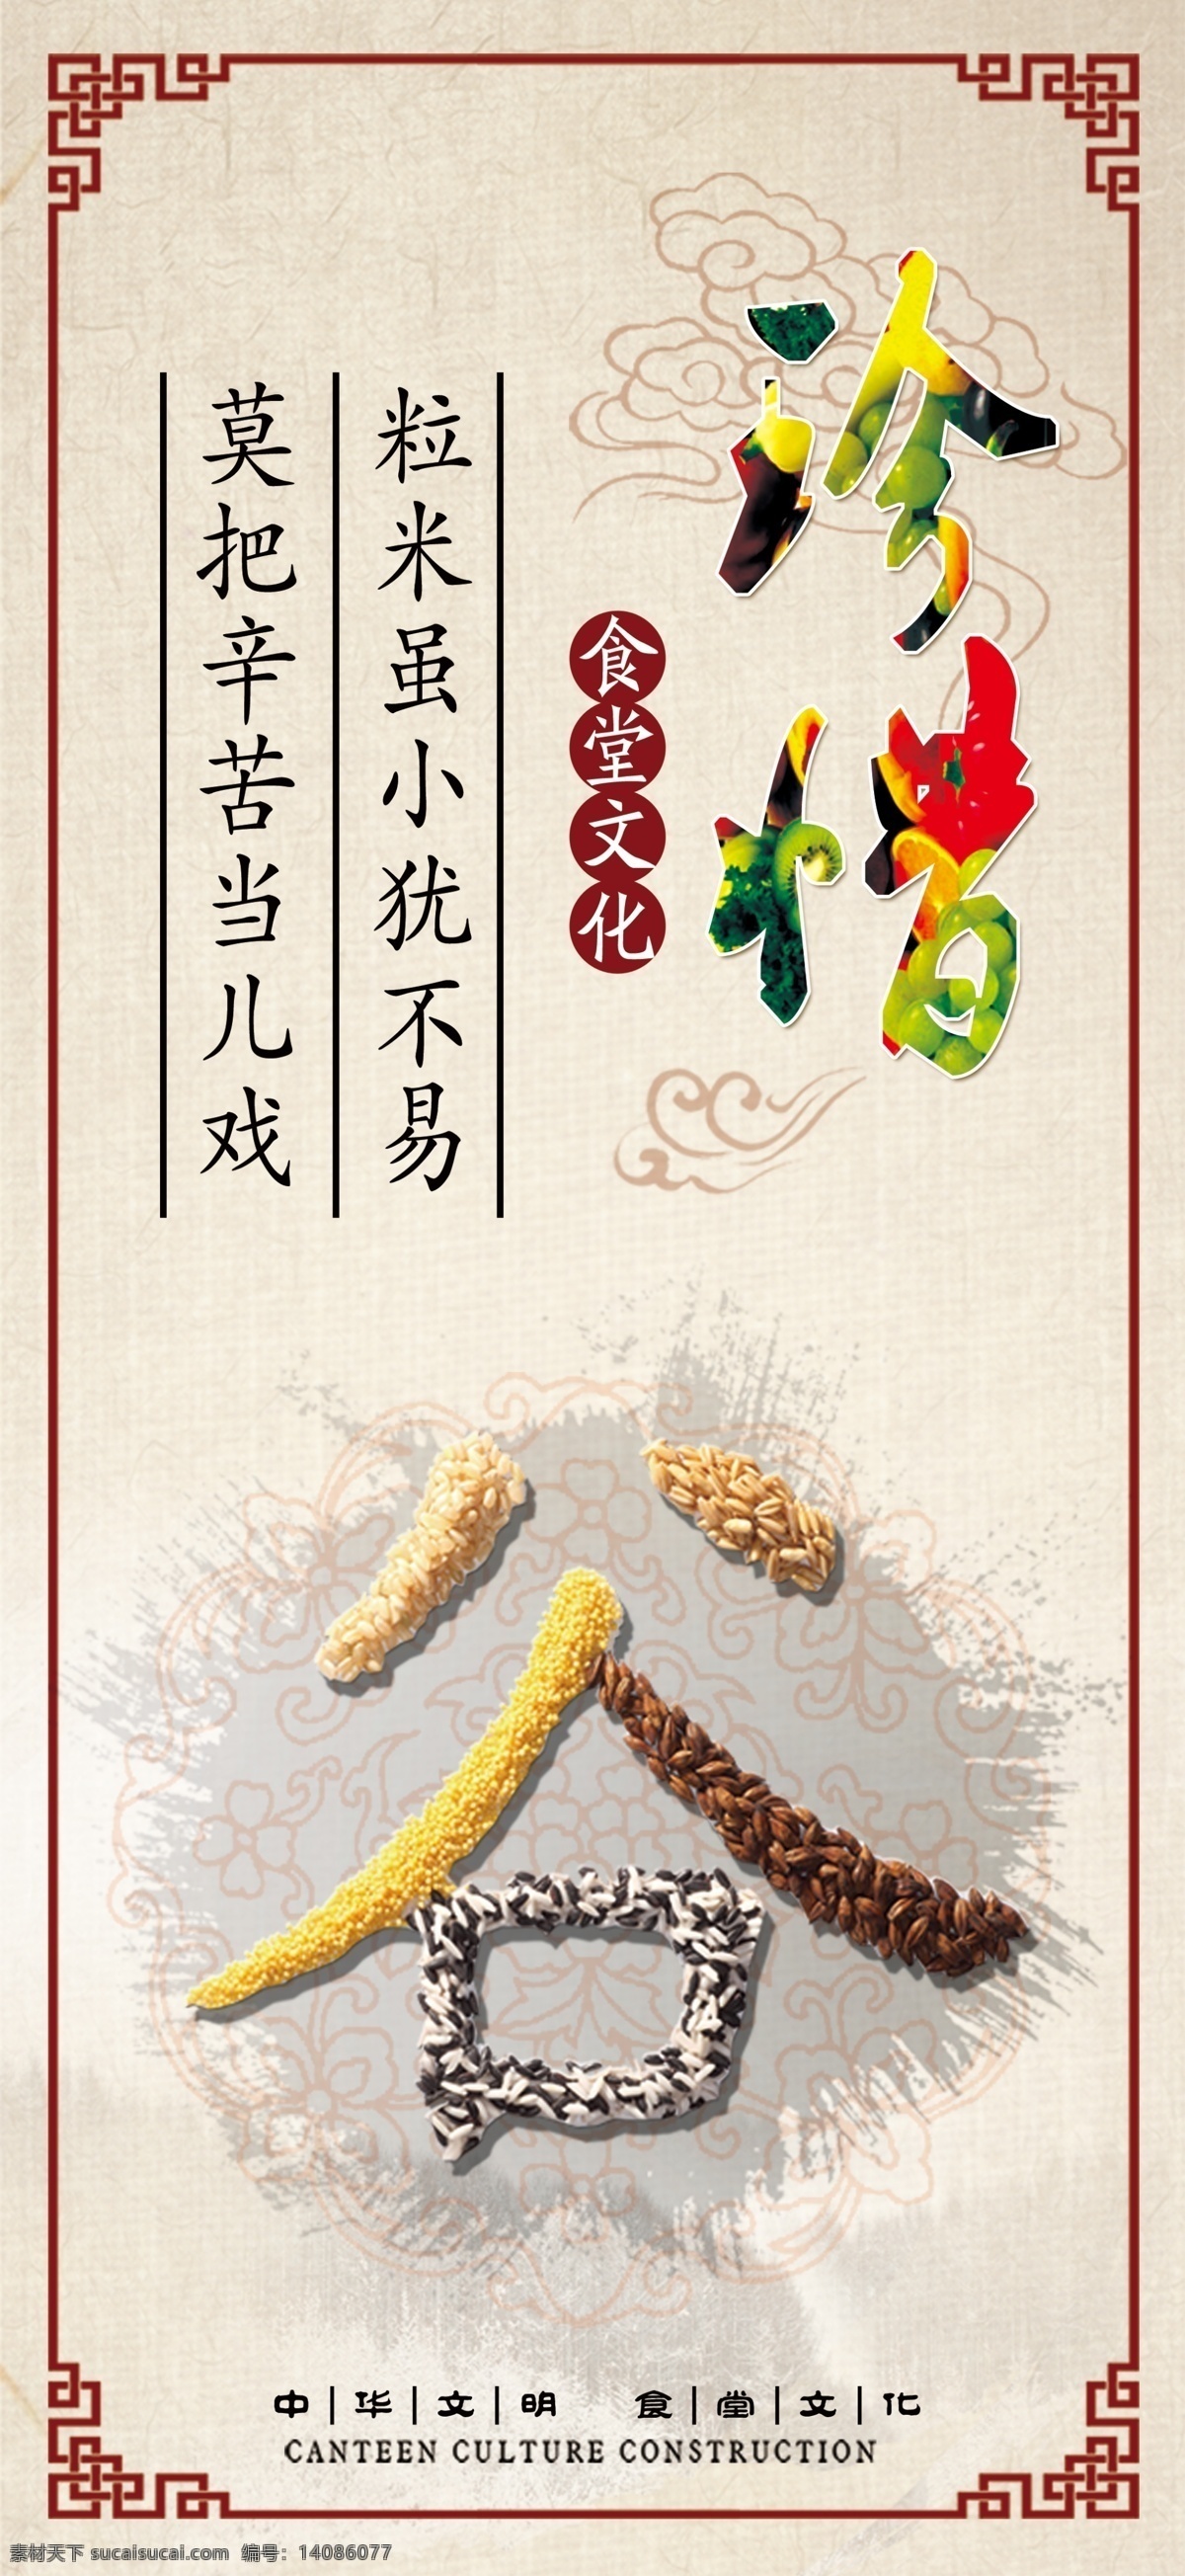 中华文明 食堂文化 国学 食堂餐厅 文化展板 古典 珍惜粮食 谷字